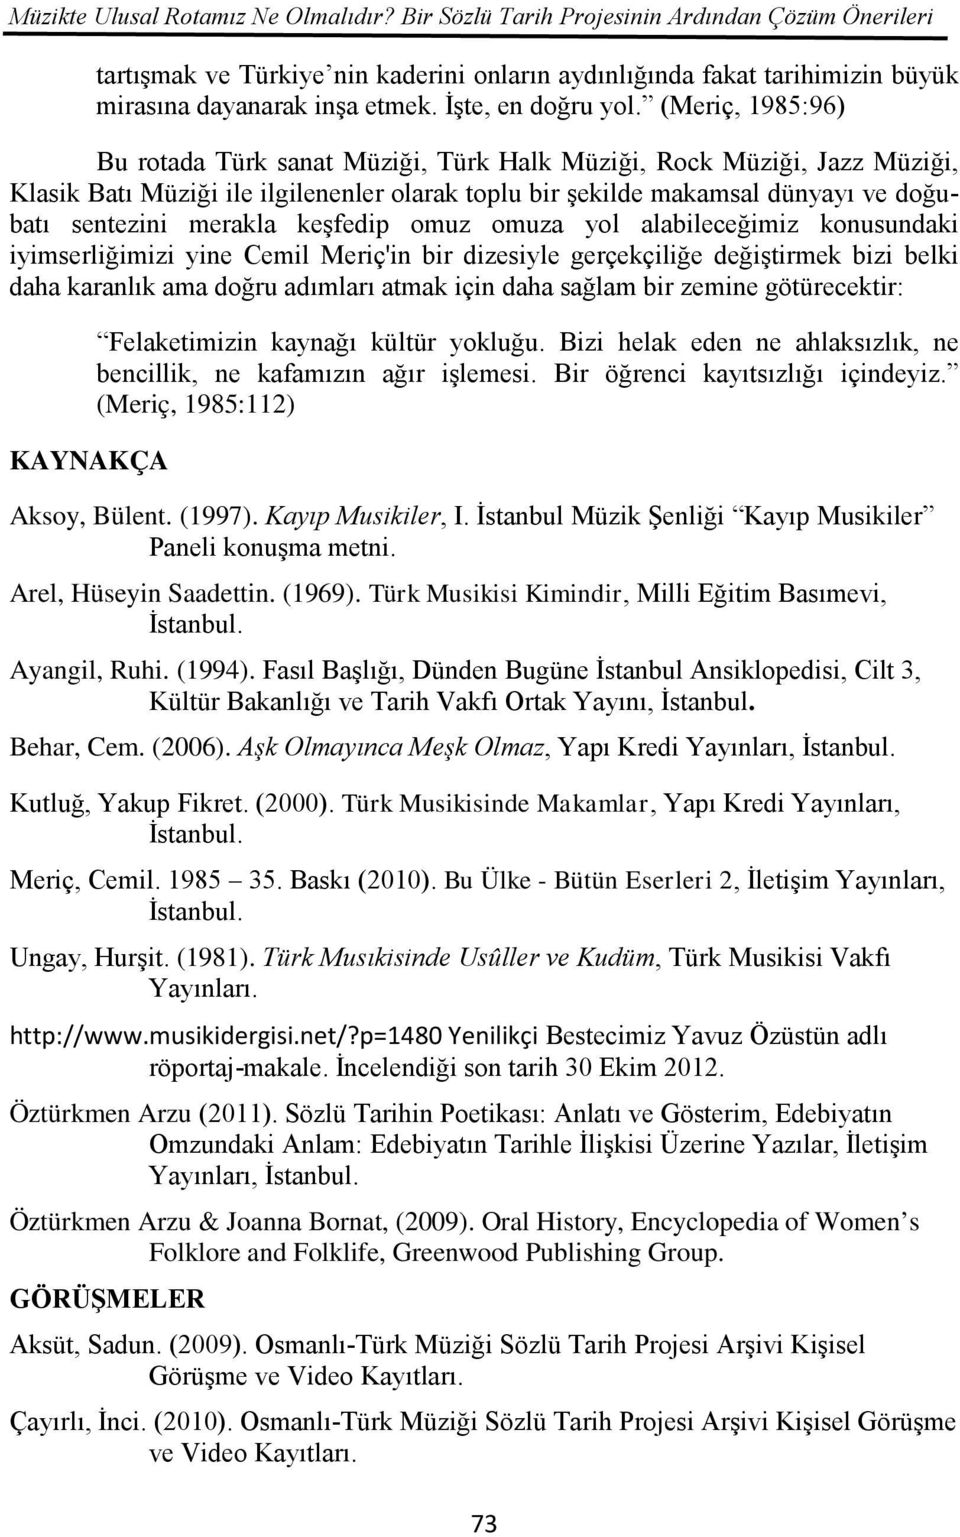 (Meriç, 1985:96) Bu rotada Türk sanat Müziği, Türk Halk Müziği, Rock Müziği, Jazz Müziği, Klasik Batı Müziği ile ilgilenenler olarak toplu bir şekilde makamsal dünyayı ve doğubatı sentezini merakla